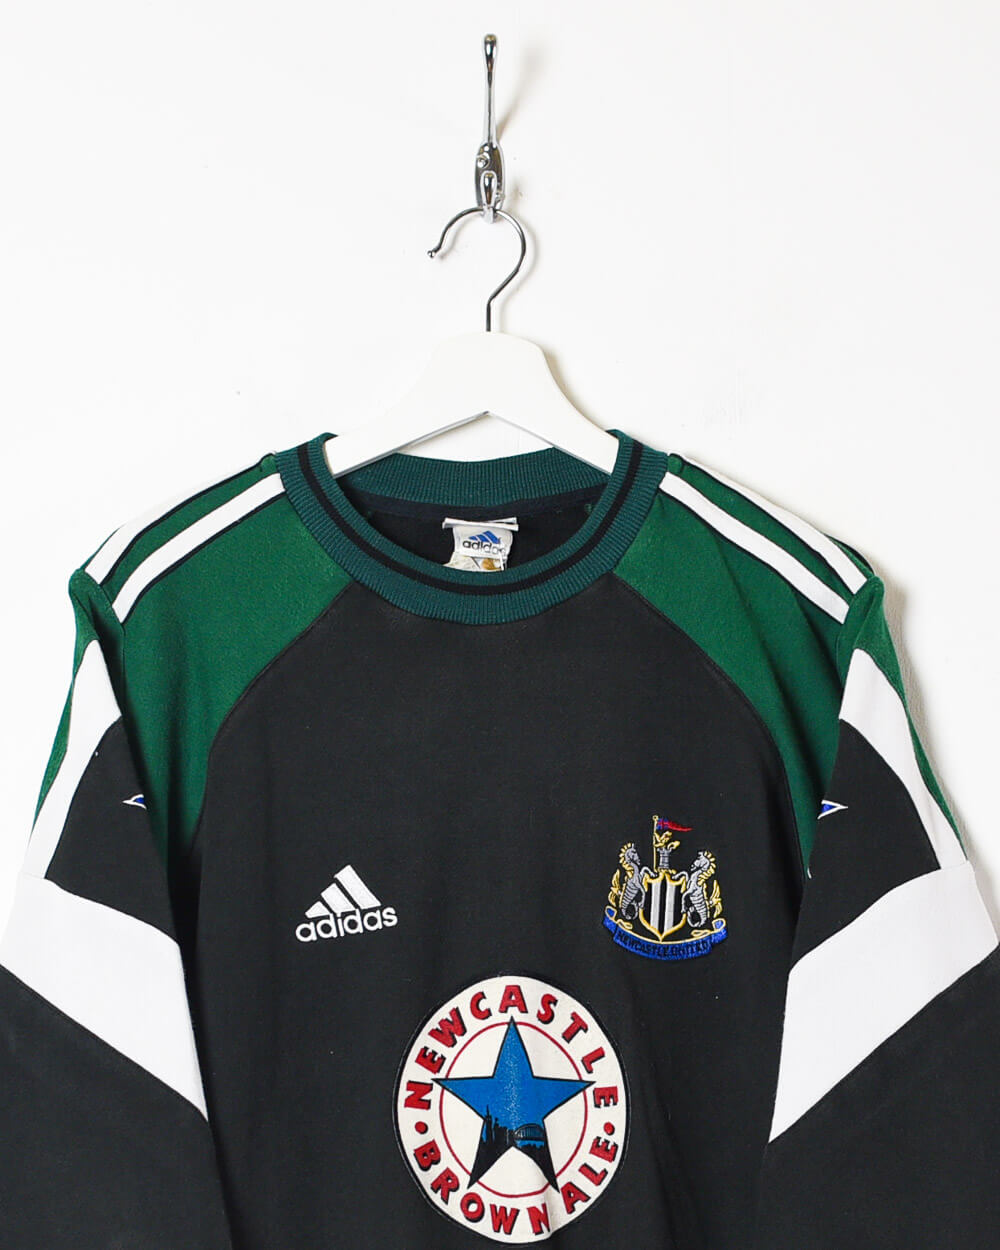 Black Adidas Newcastle United 1997/98 Sweatshirt - Medium